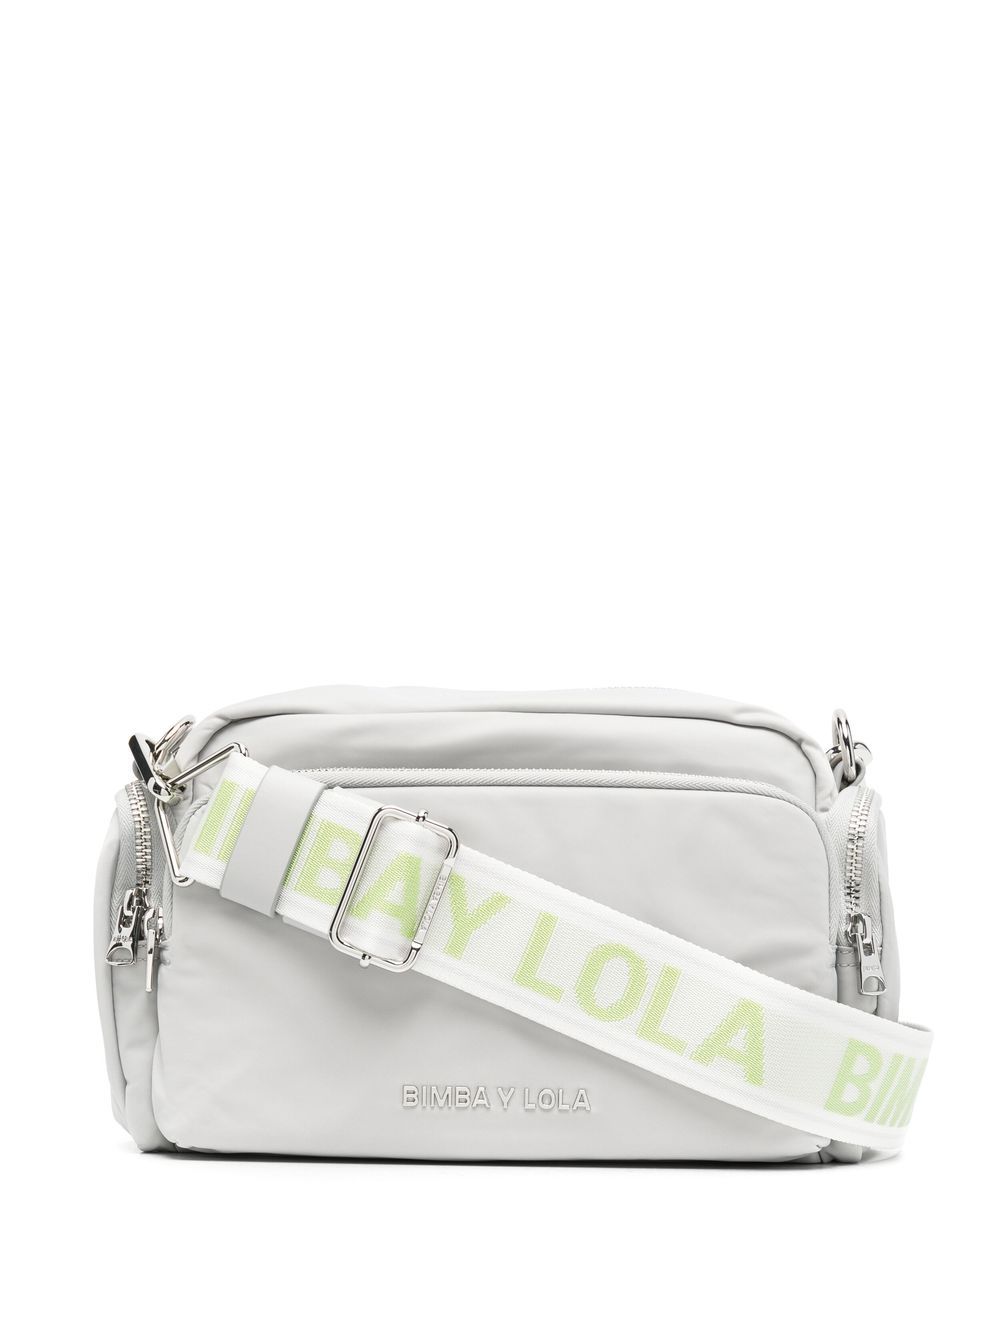 HealthdesignShops, Louis Vuitton Valise Suitcase 400004